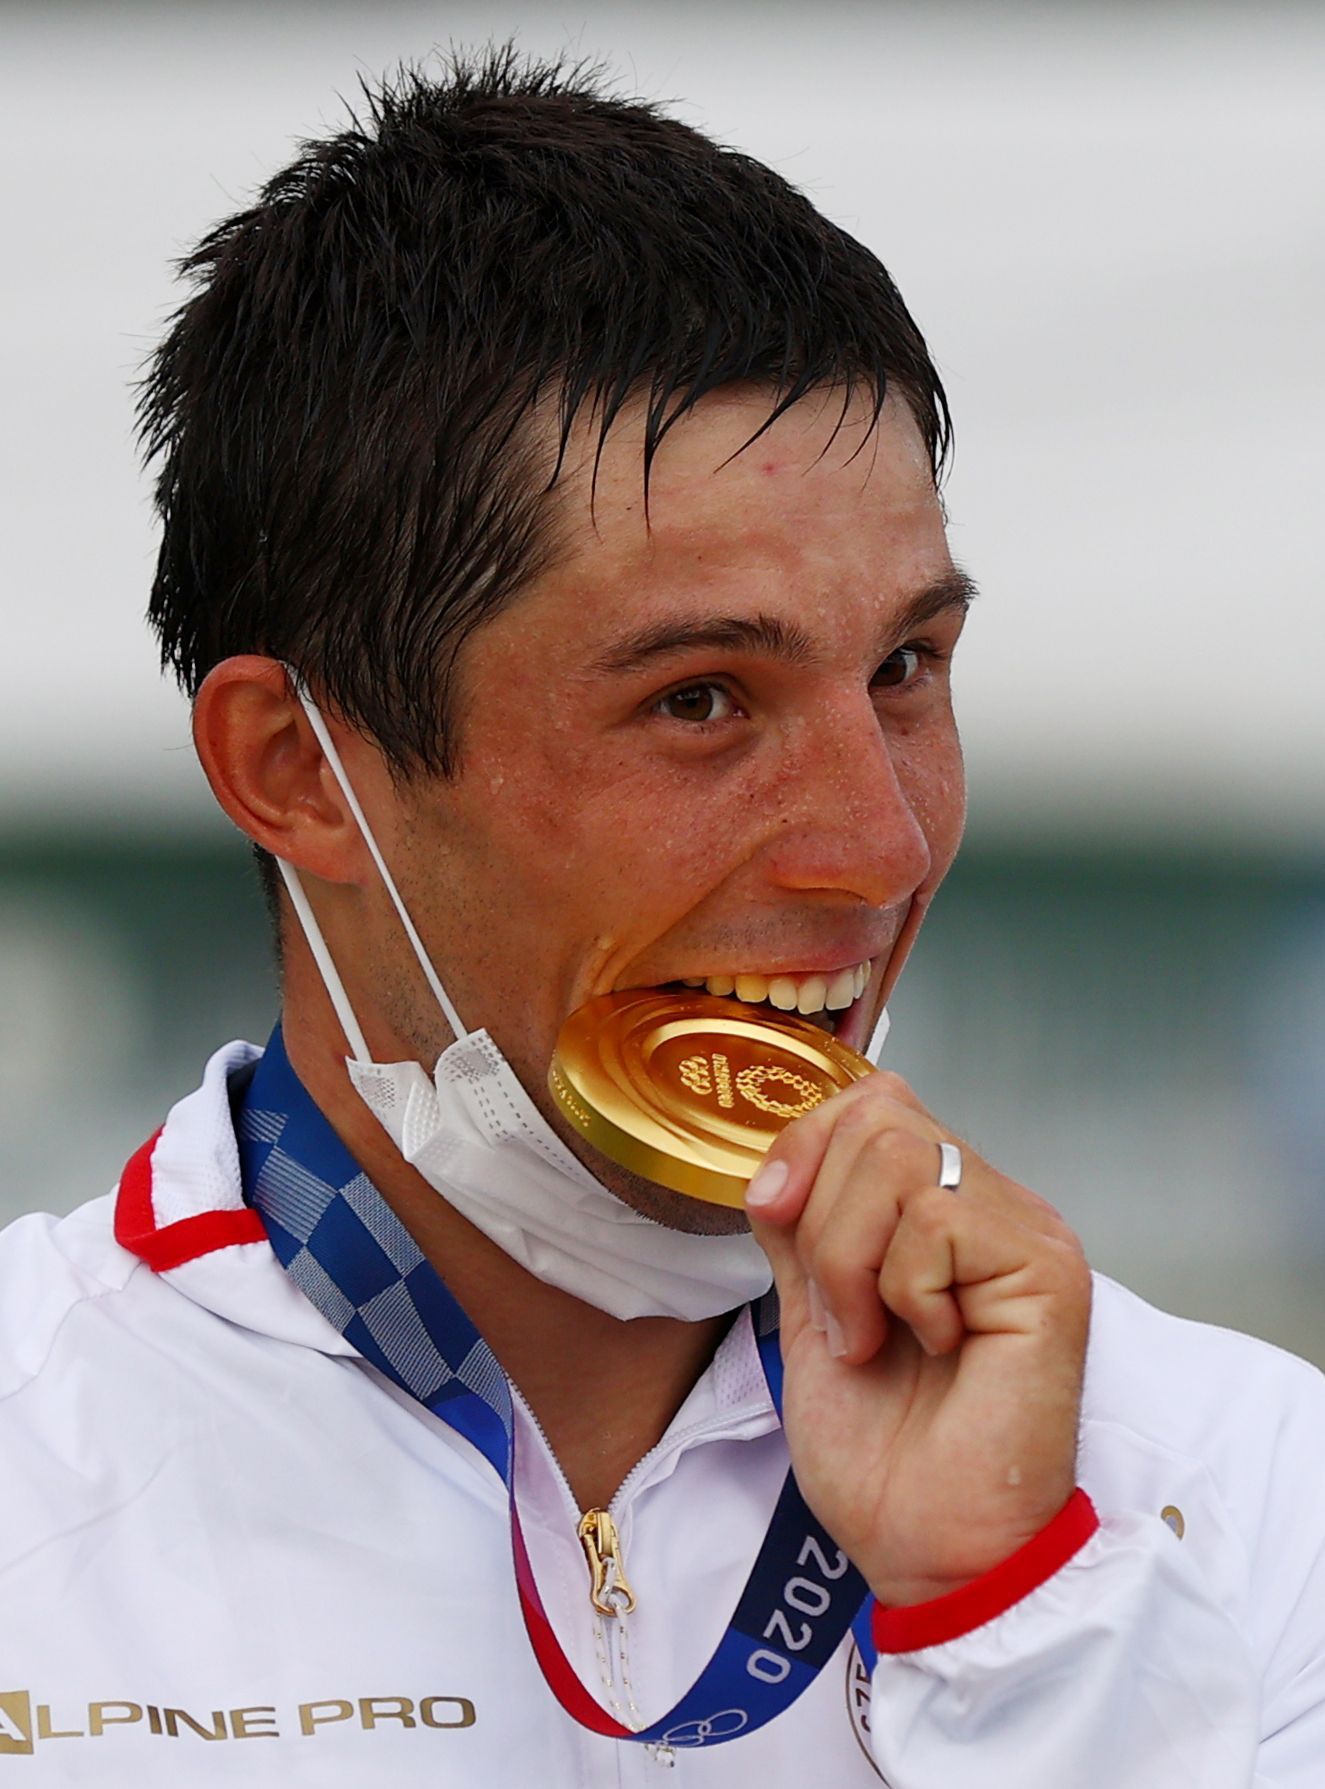 Kajakář Jiří Prskavec se zlatou medailí po vítězství ve finále na OH 2020